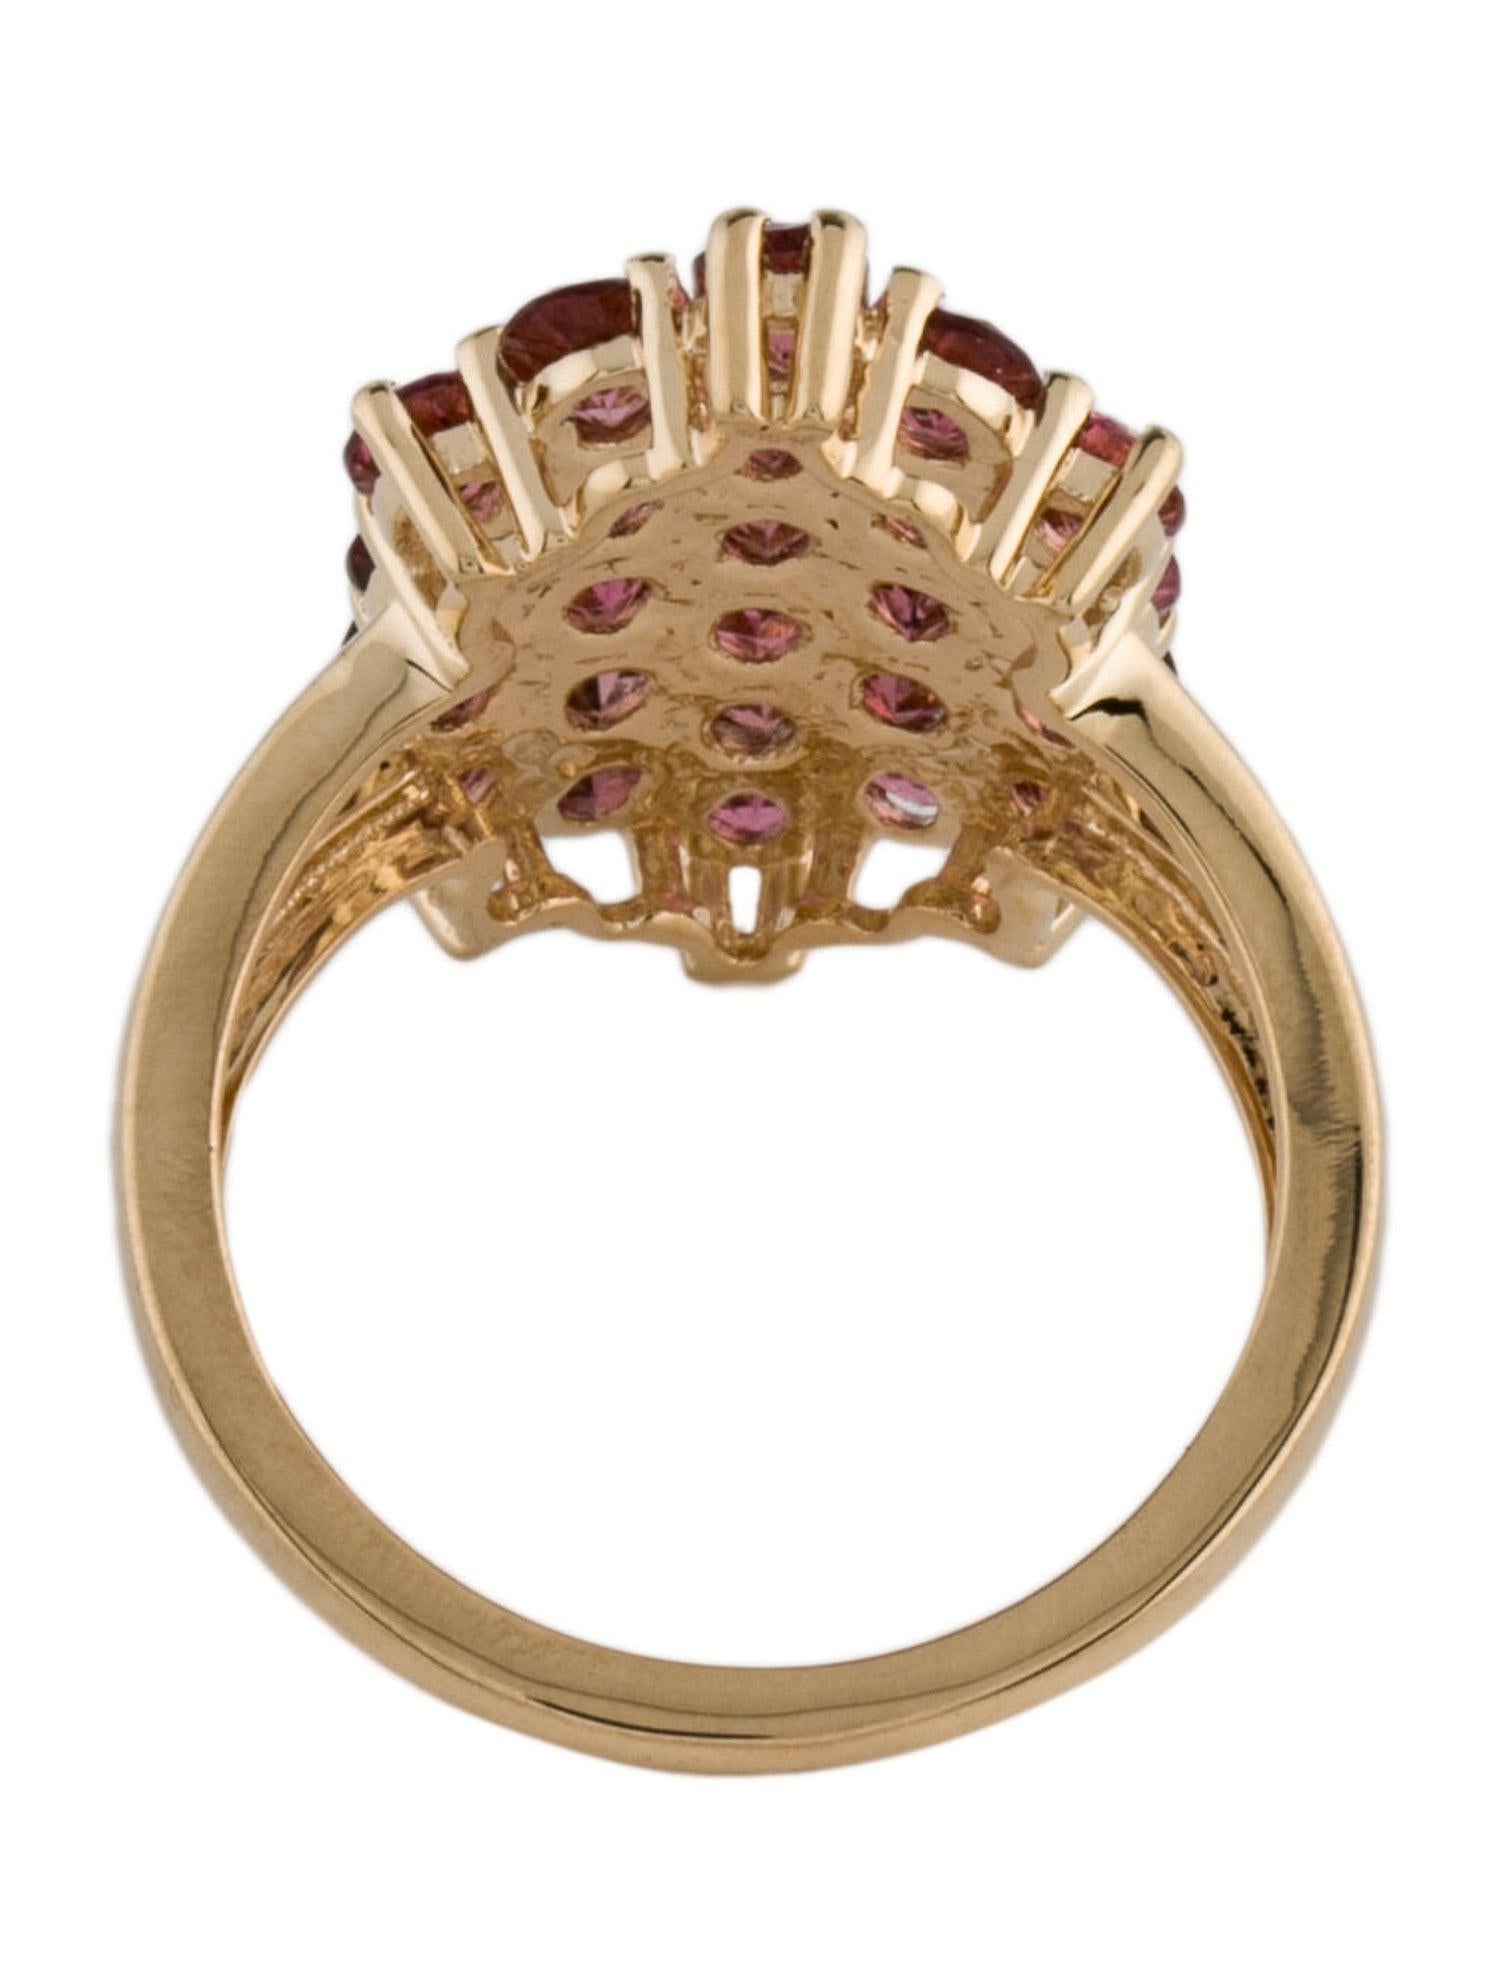 Oval Cut Elegant 14K Pink Tourmaline Cocktail Ring - Size 7  Vintage Gemstone Ring For Sale